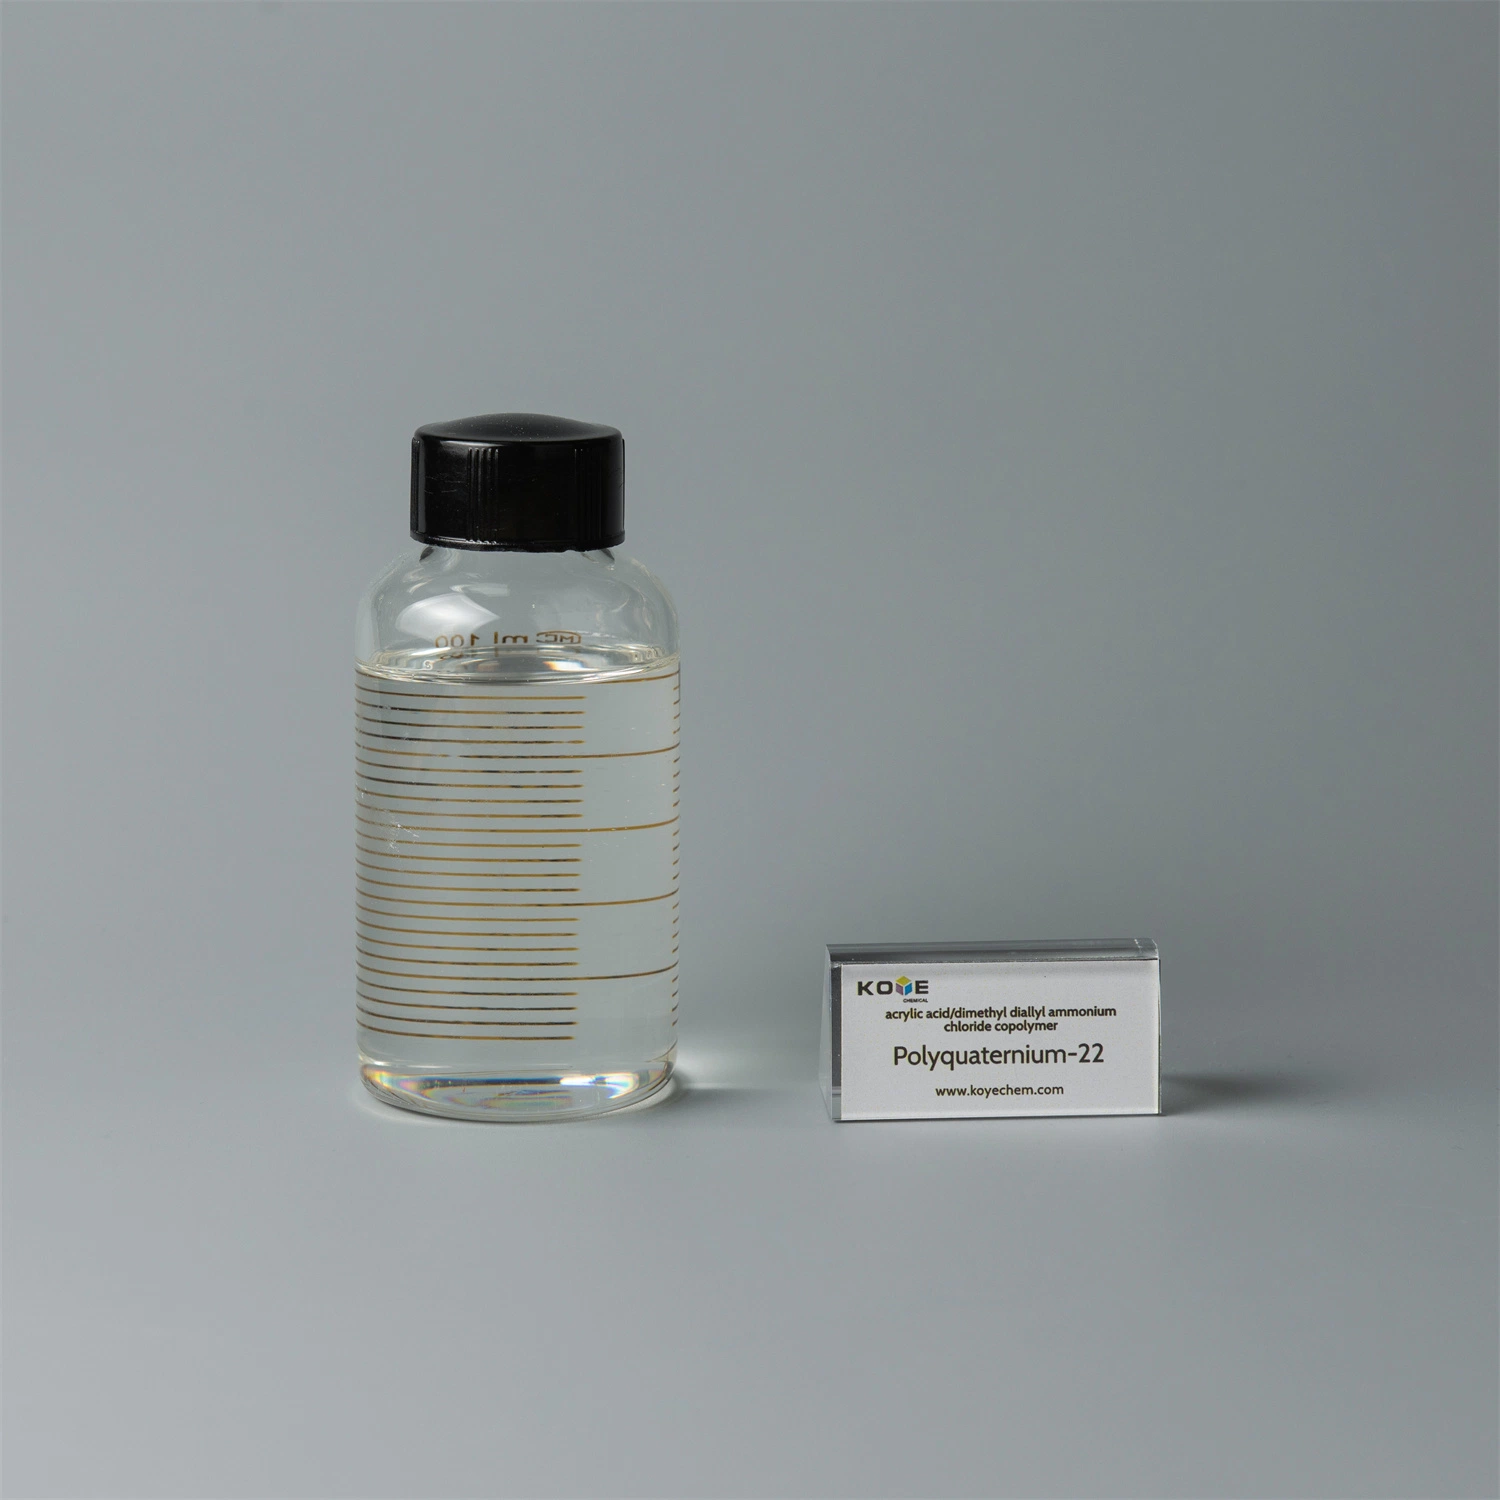 Polyquaternium-22 /CAS-Nr. 53694-17-0/Dimethyl Diallyl Ammonium Chlorid Copolymer